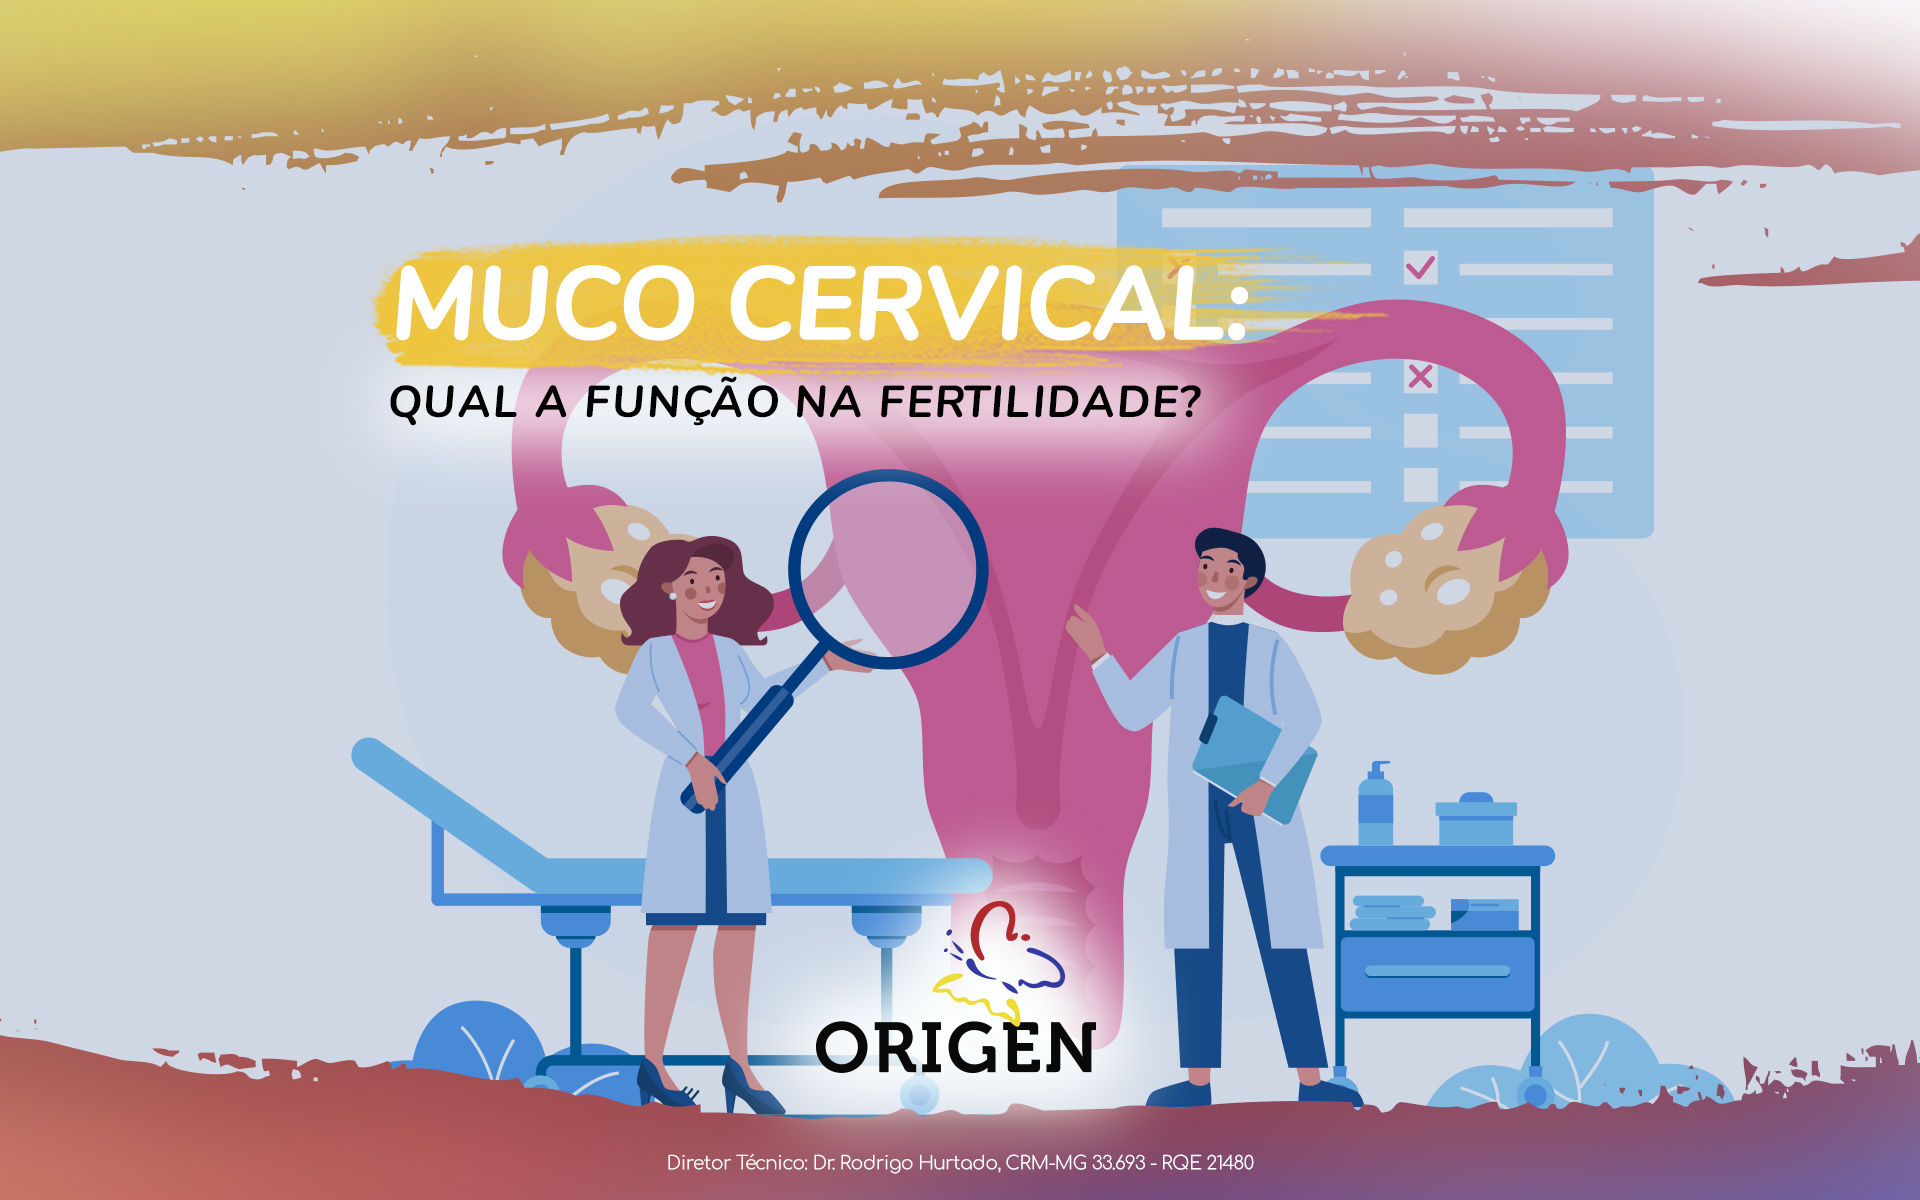 Muco cervical: qual a função na fertilidade?